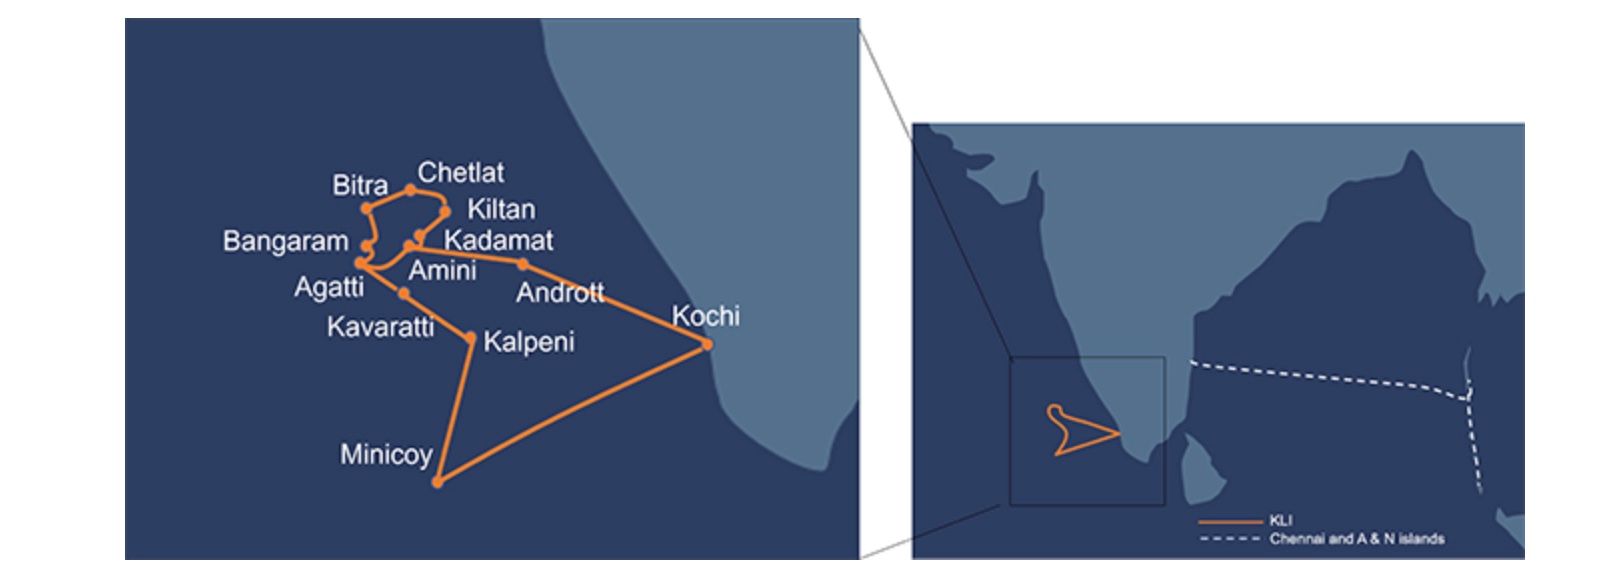 NEC färdigställer ubåtskabelsystem för Indiens BSNL som förbinder Kochi och Lakshadweepöarna